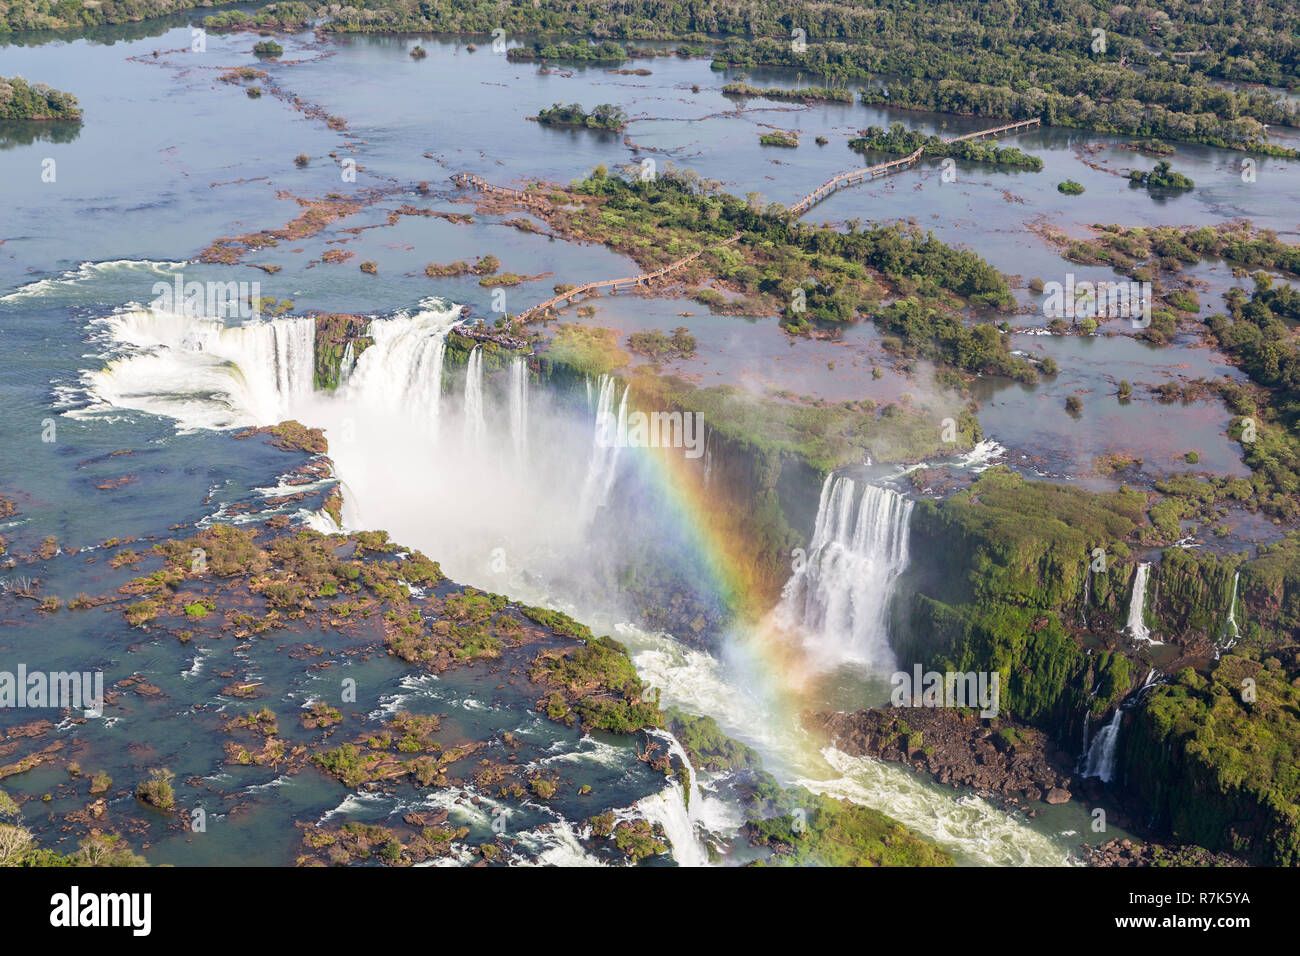 Día del Maestro cortesía concierto Vista aérea del hermoso arco iris por encima de las Cataratas del Iguazú  Garganta del Diablo abismo desde un vuelo en helicóptero. Brasil y  Argentina. América del Sur Fotografía de stock -